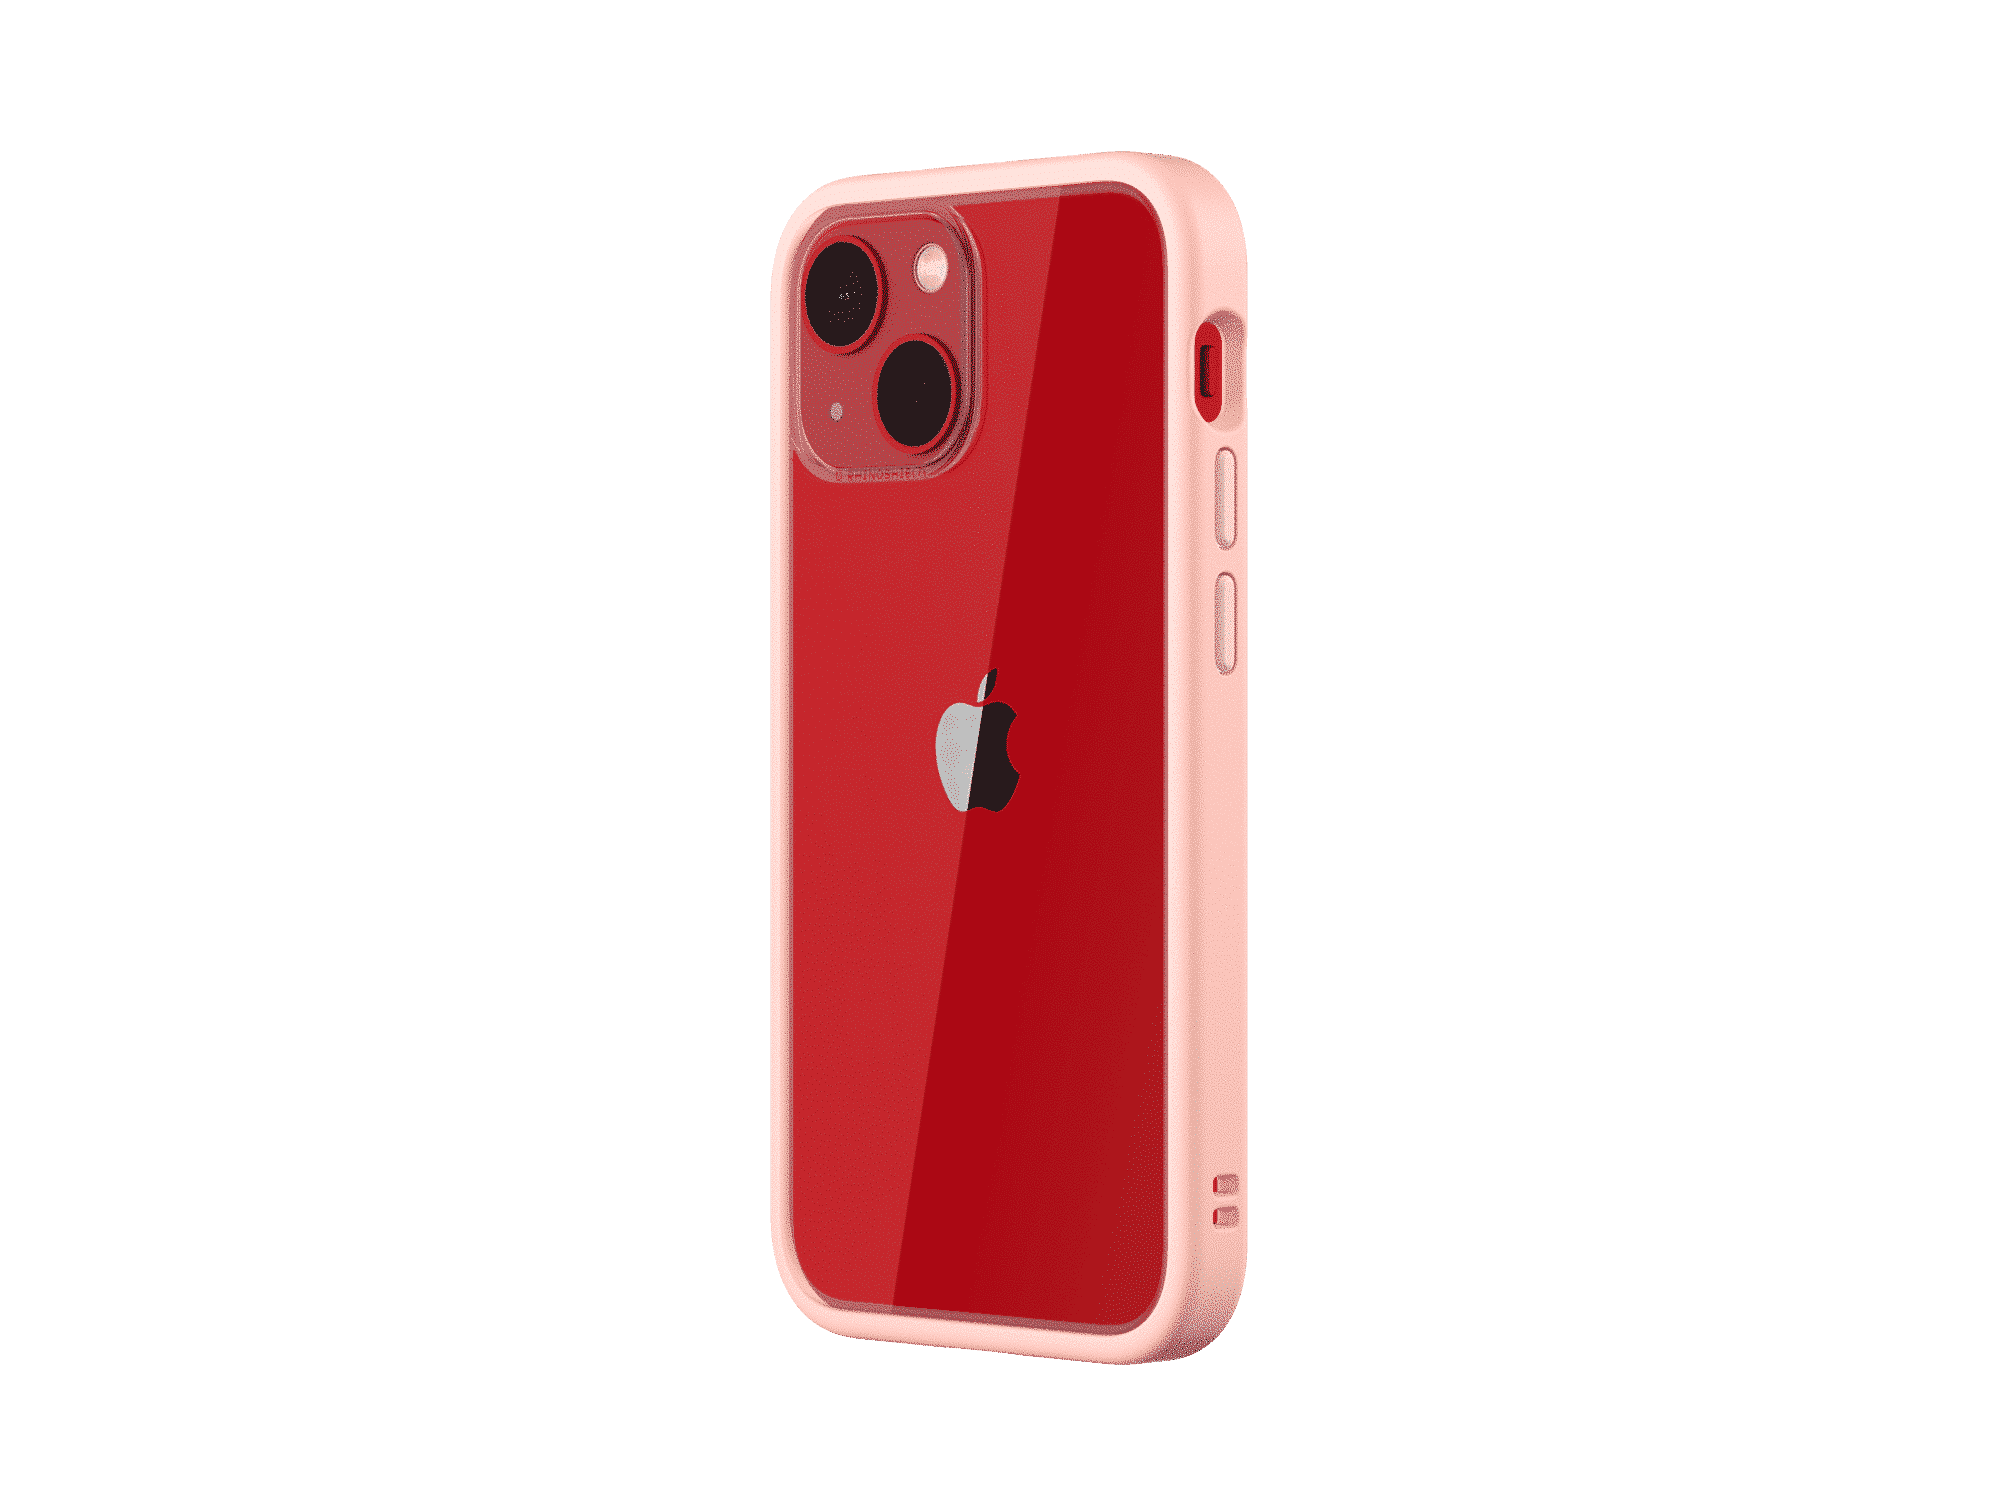 เคส RhinoShield รุ่น Mod NX - iPhone 13 Mini - Blush Pink